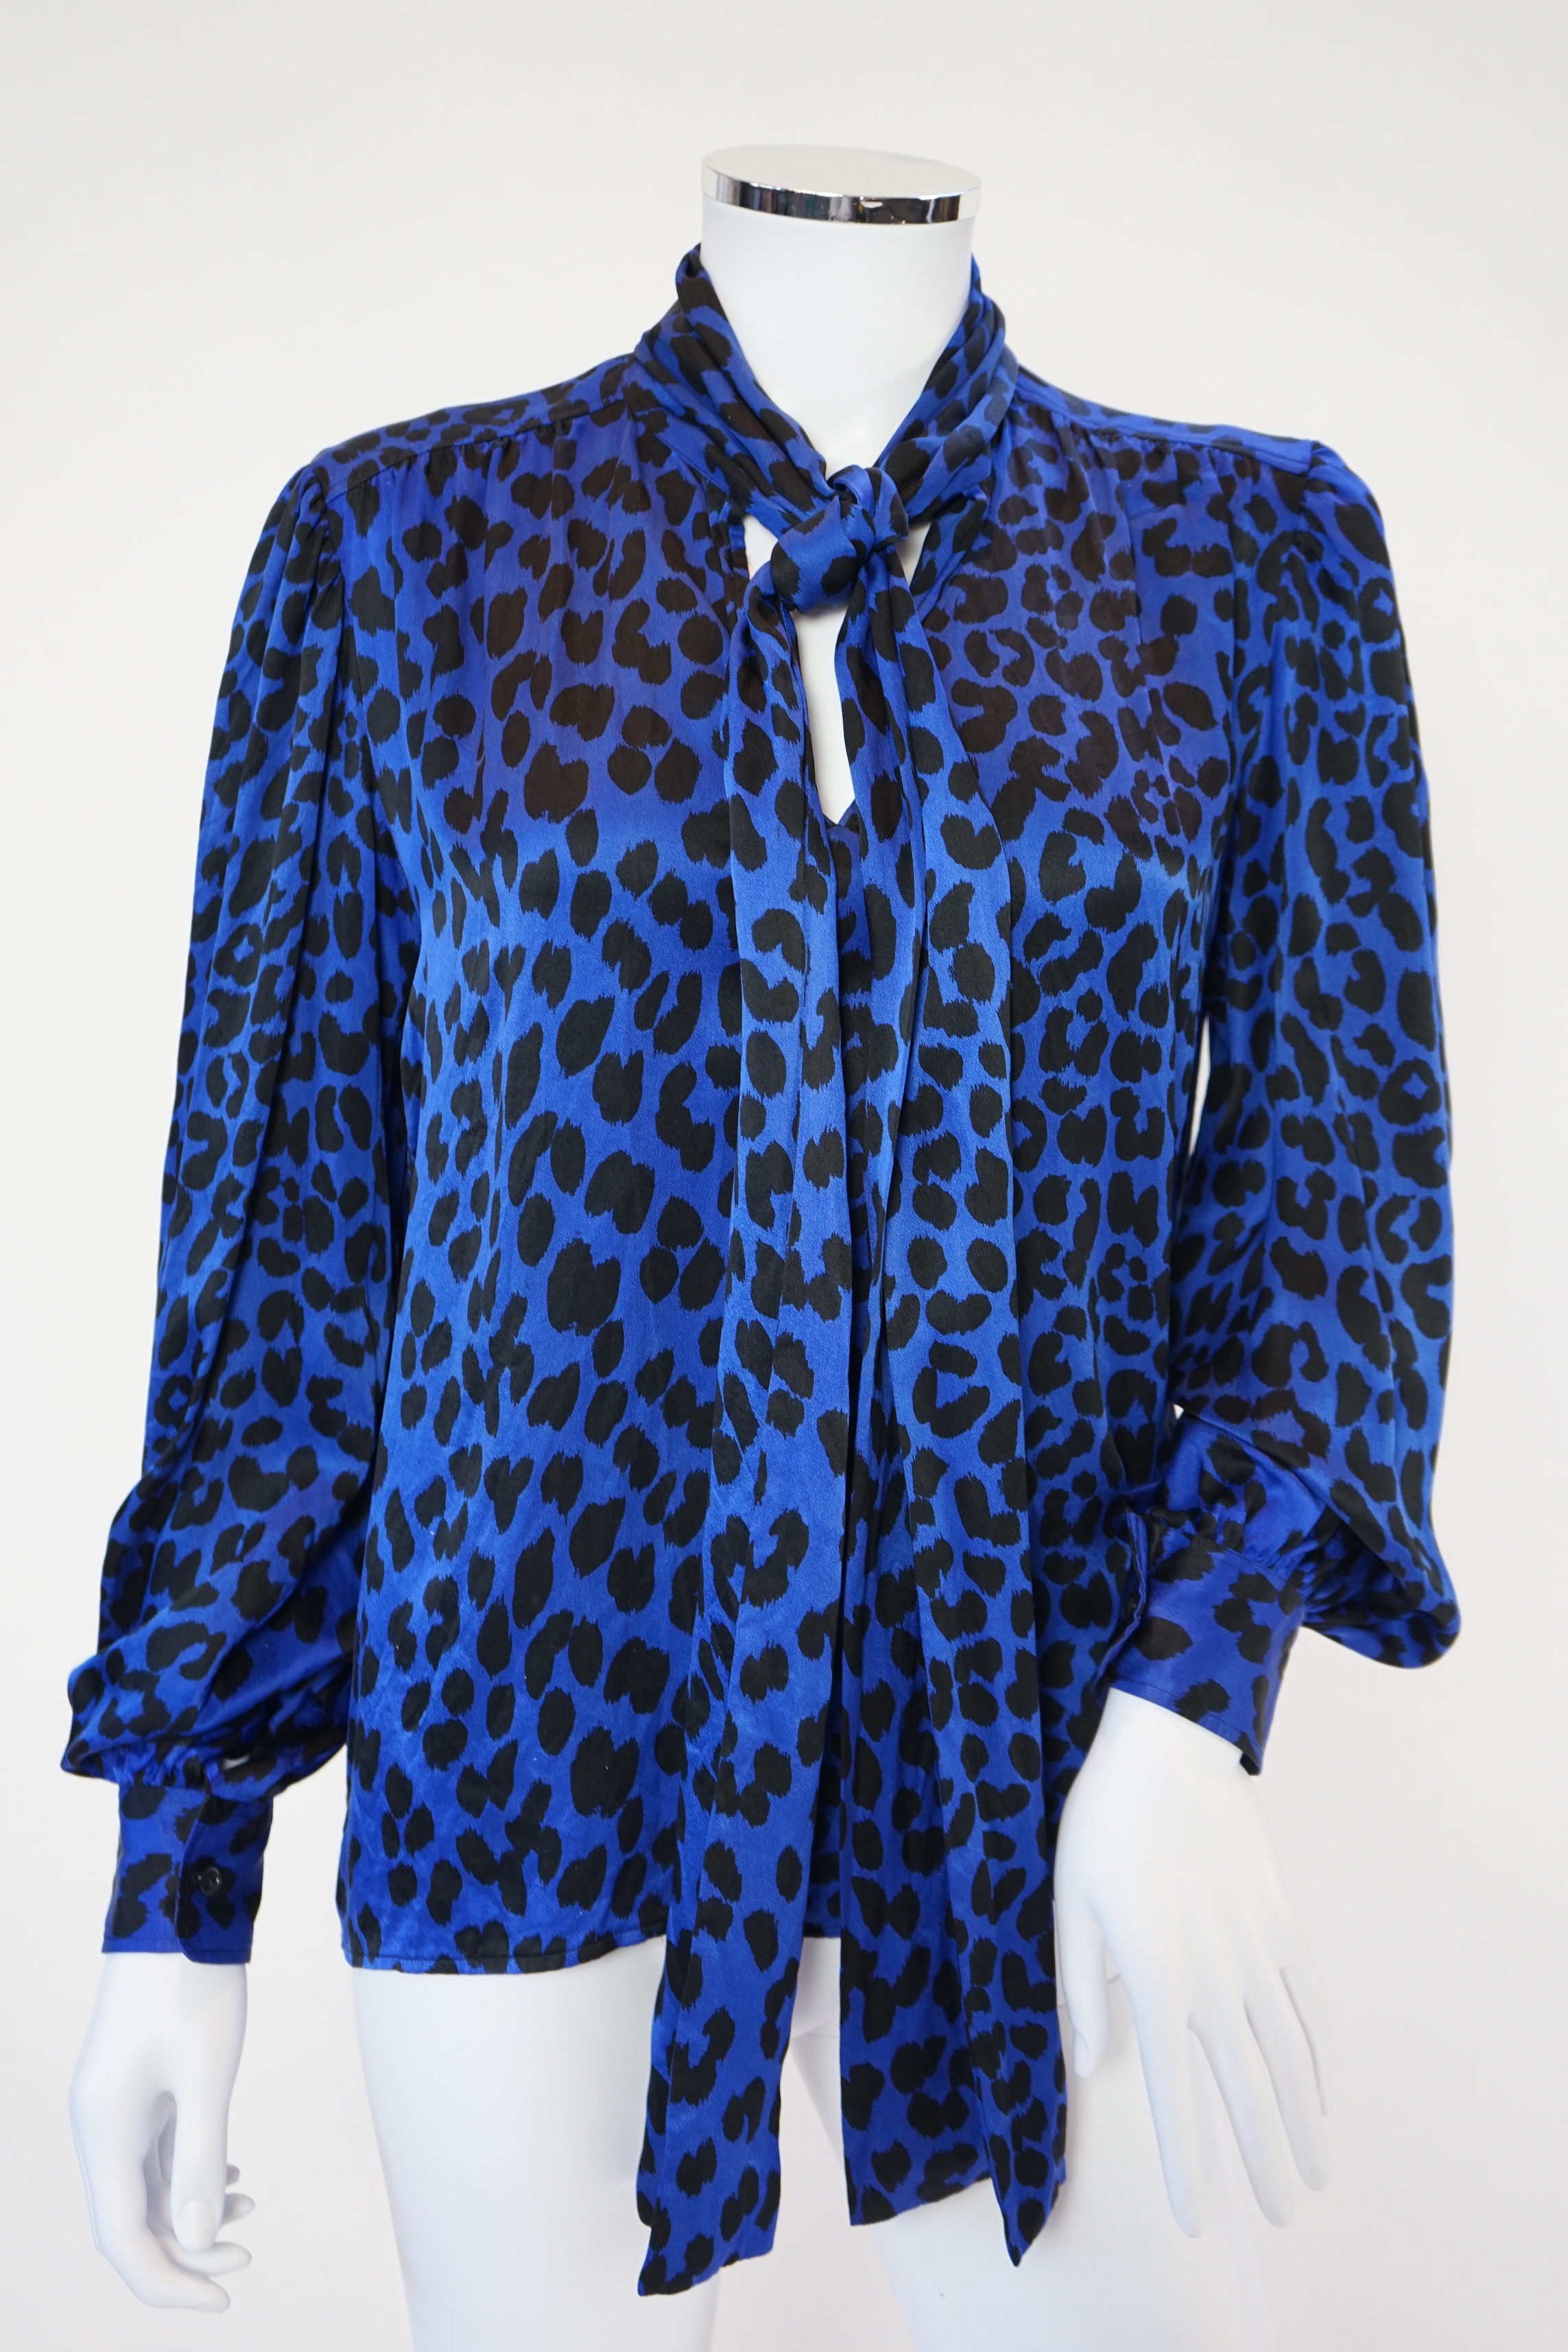 A vintage Saint Laurent royal blue and black leopard print silk blouse, IT40